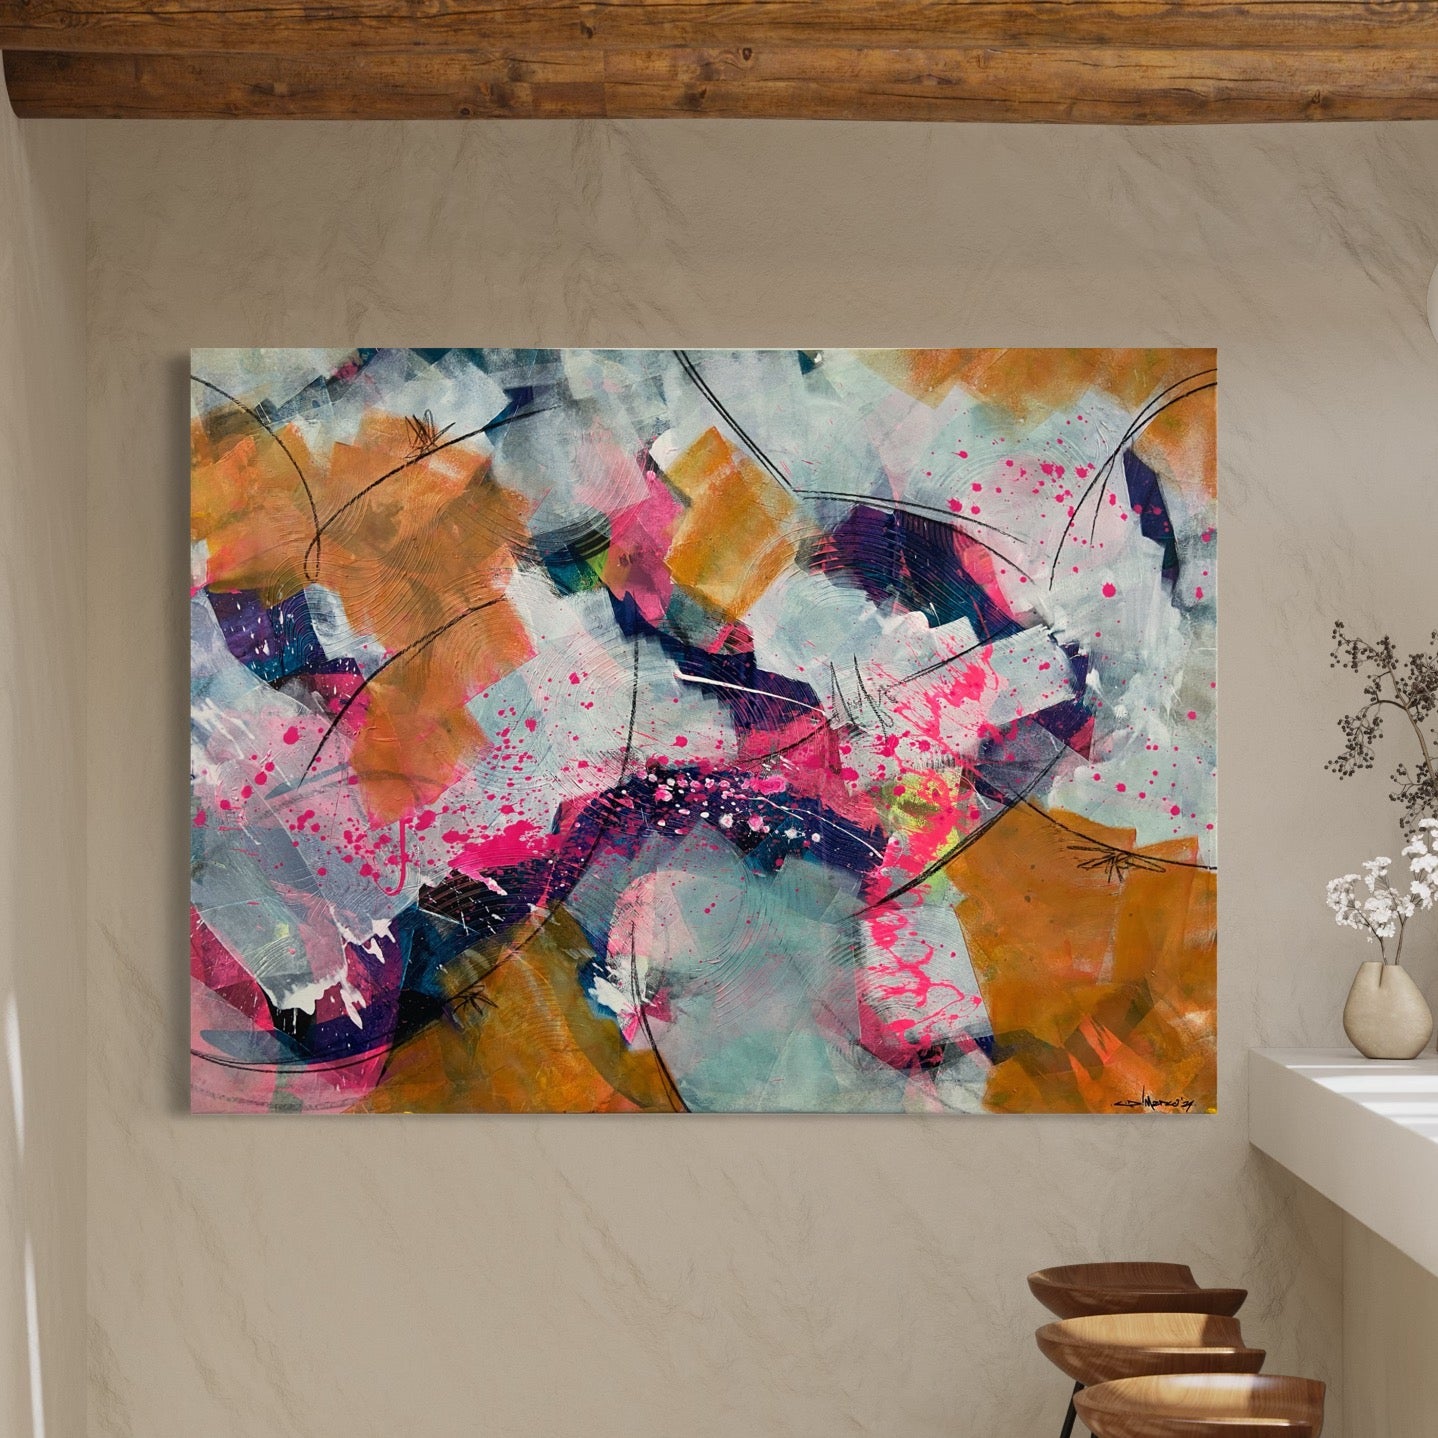 Kunstwerk von Claudio Di Marco mit dem Titel "abstrakt Nr. 4", 110cm hoch, 150cm breit und 2cm tief mit den Farben Pink und div. Gelbtöne